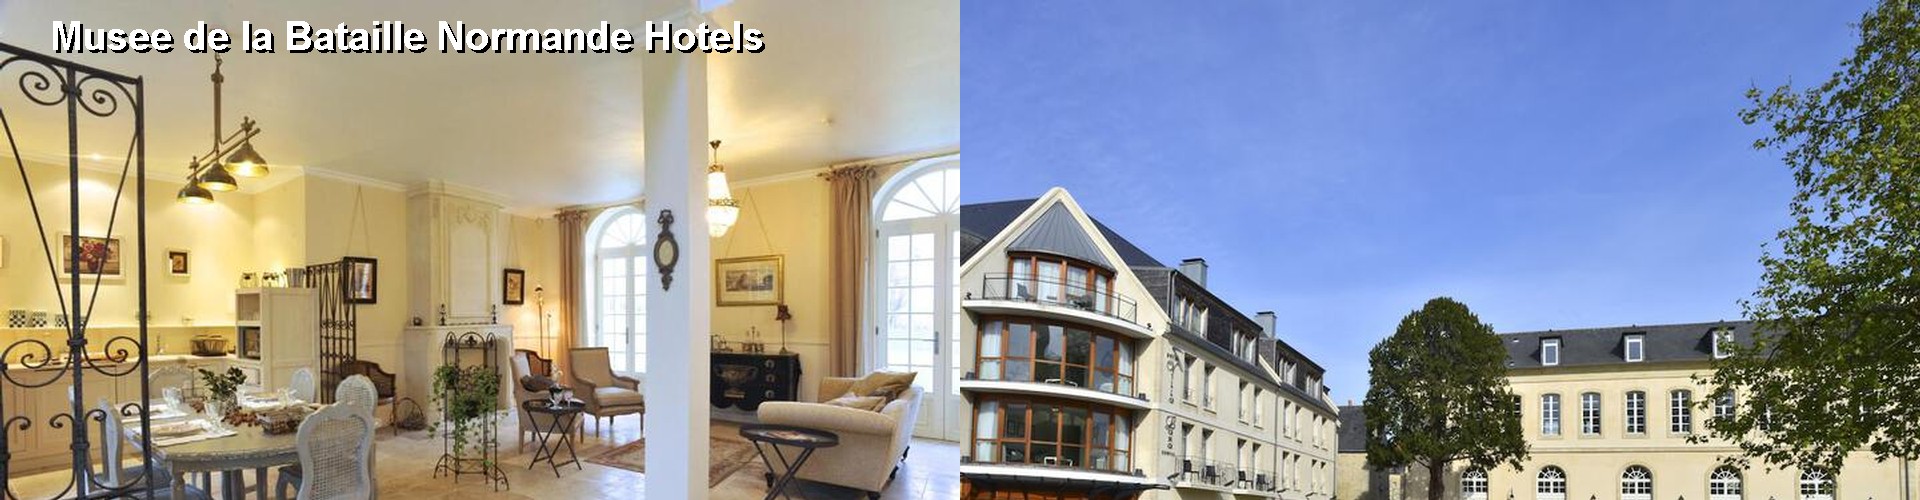 5 Best Hotels near Musee de la Bataille Normande